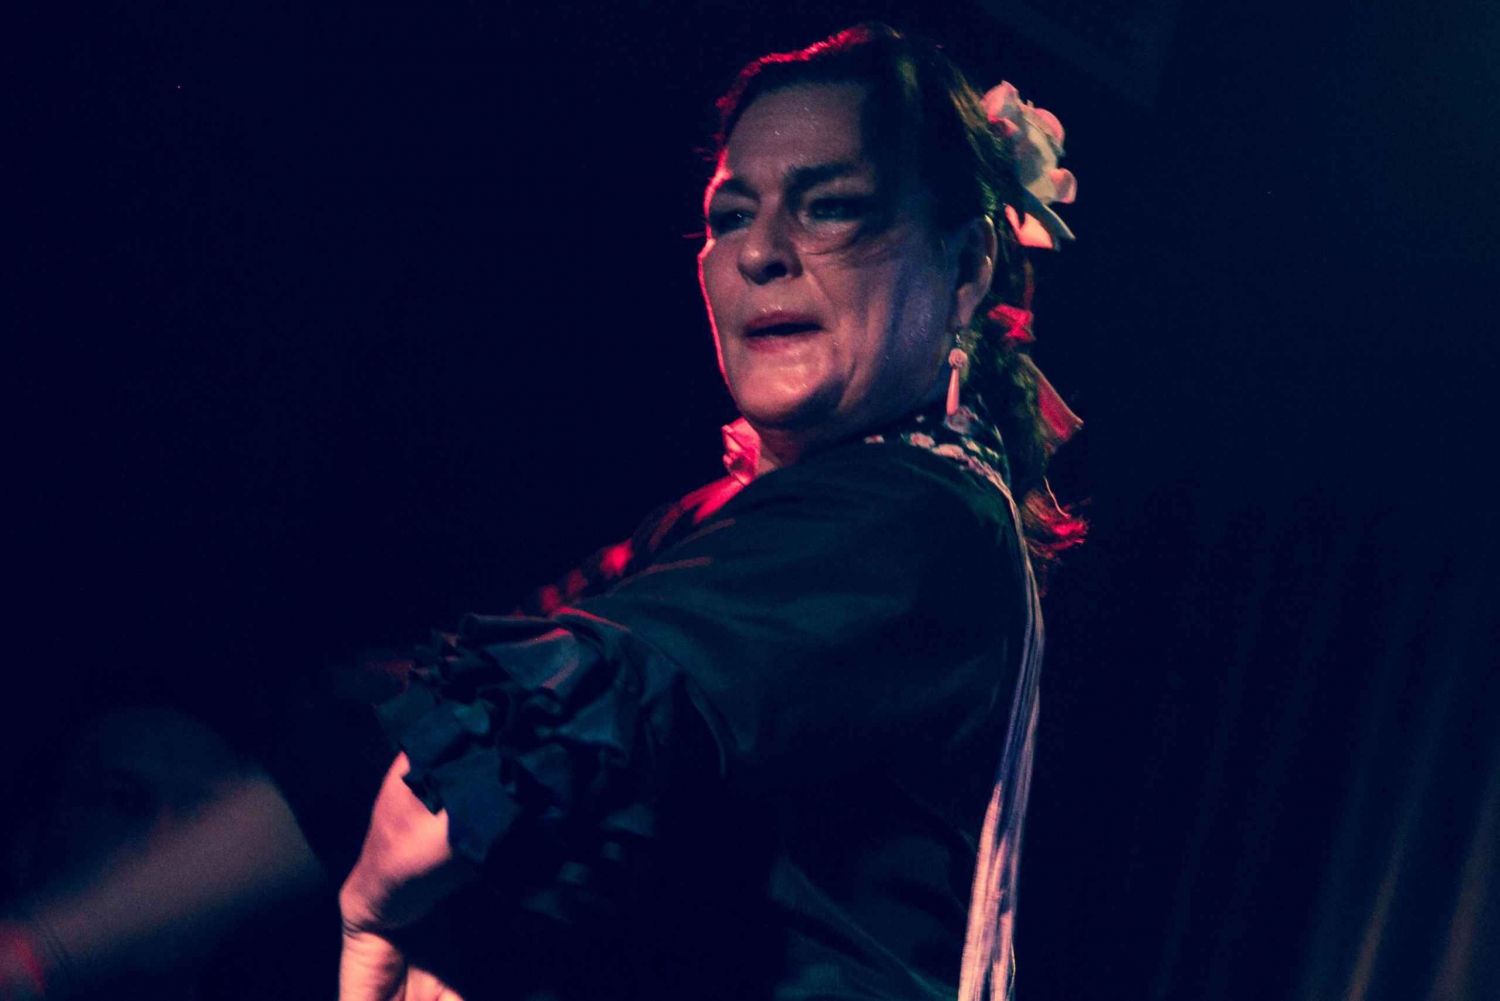 Madri: Show de flamenco no Café Ziryab